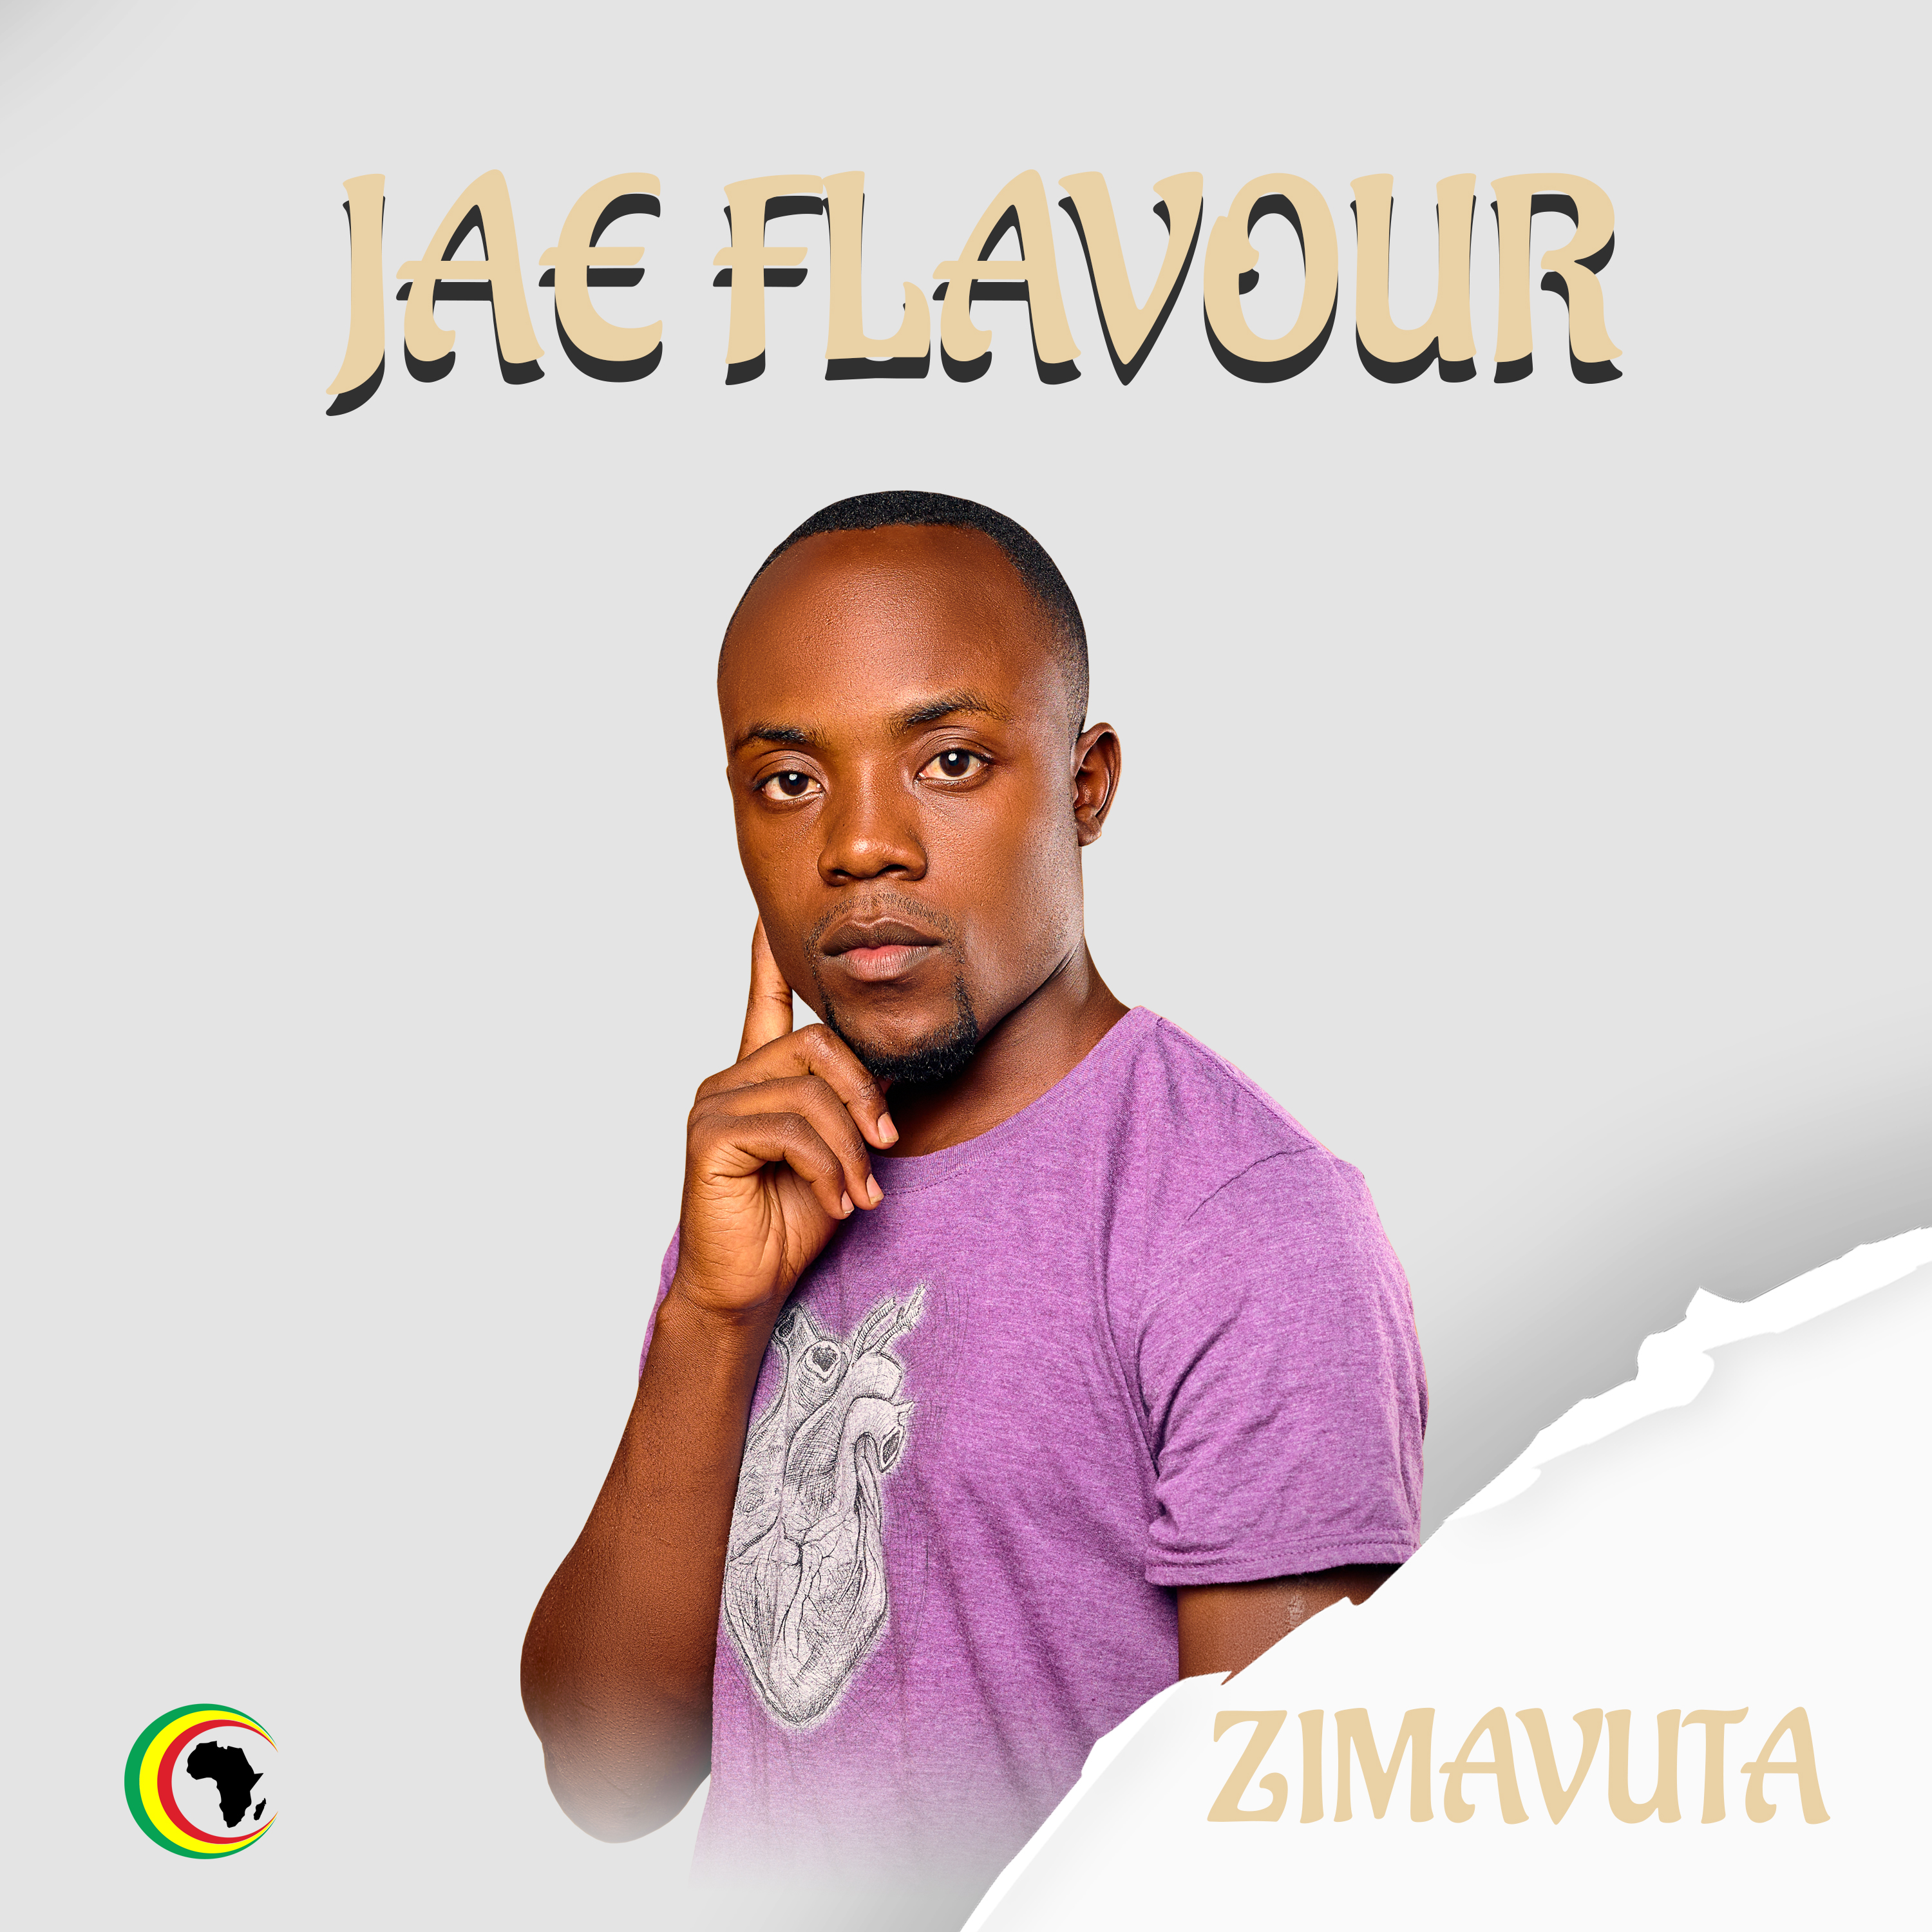 Zimavuta by Jae flavour | Album